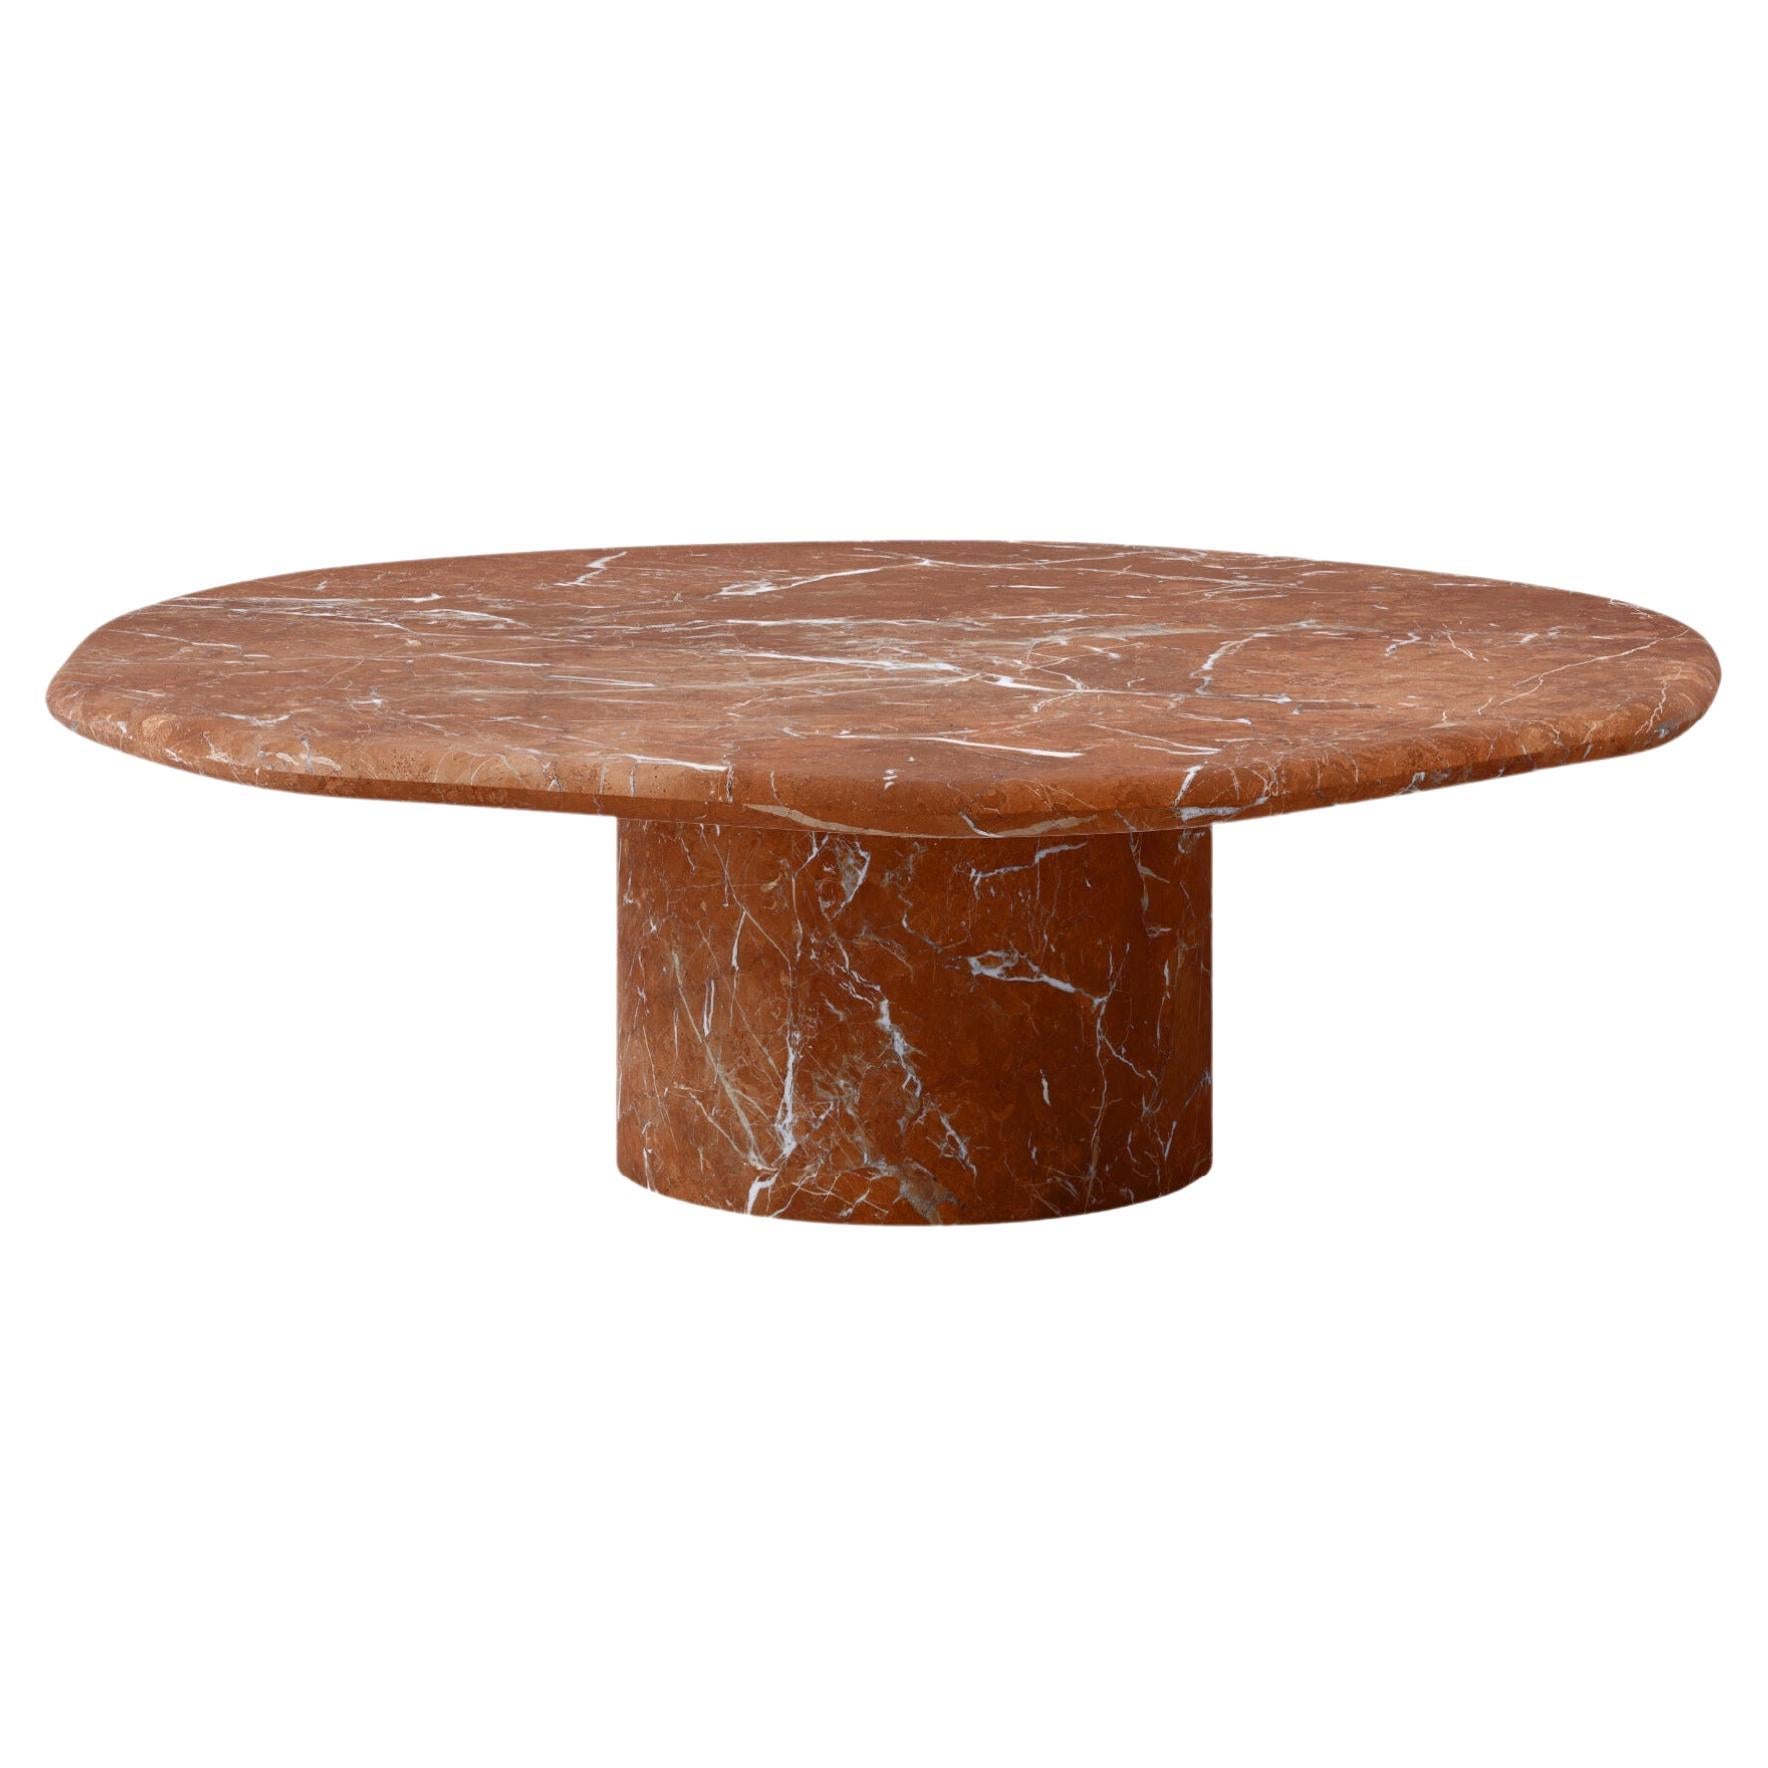 FORM(LA) Lago Round Coffee Table 54”L x 54”W x 14”H Rojo Alicante Marble For Sale